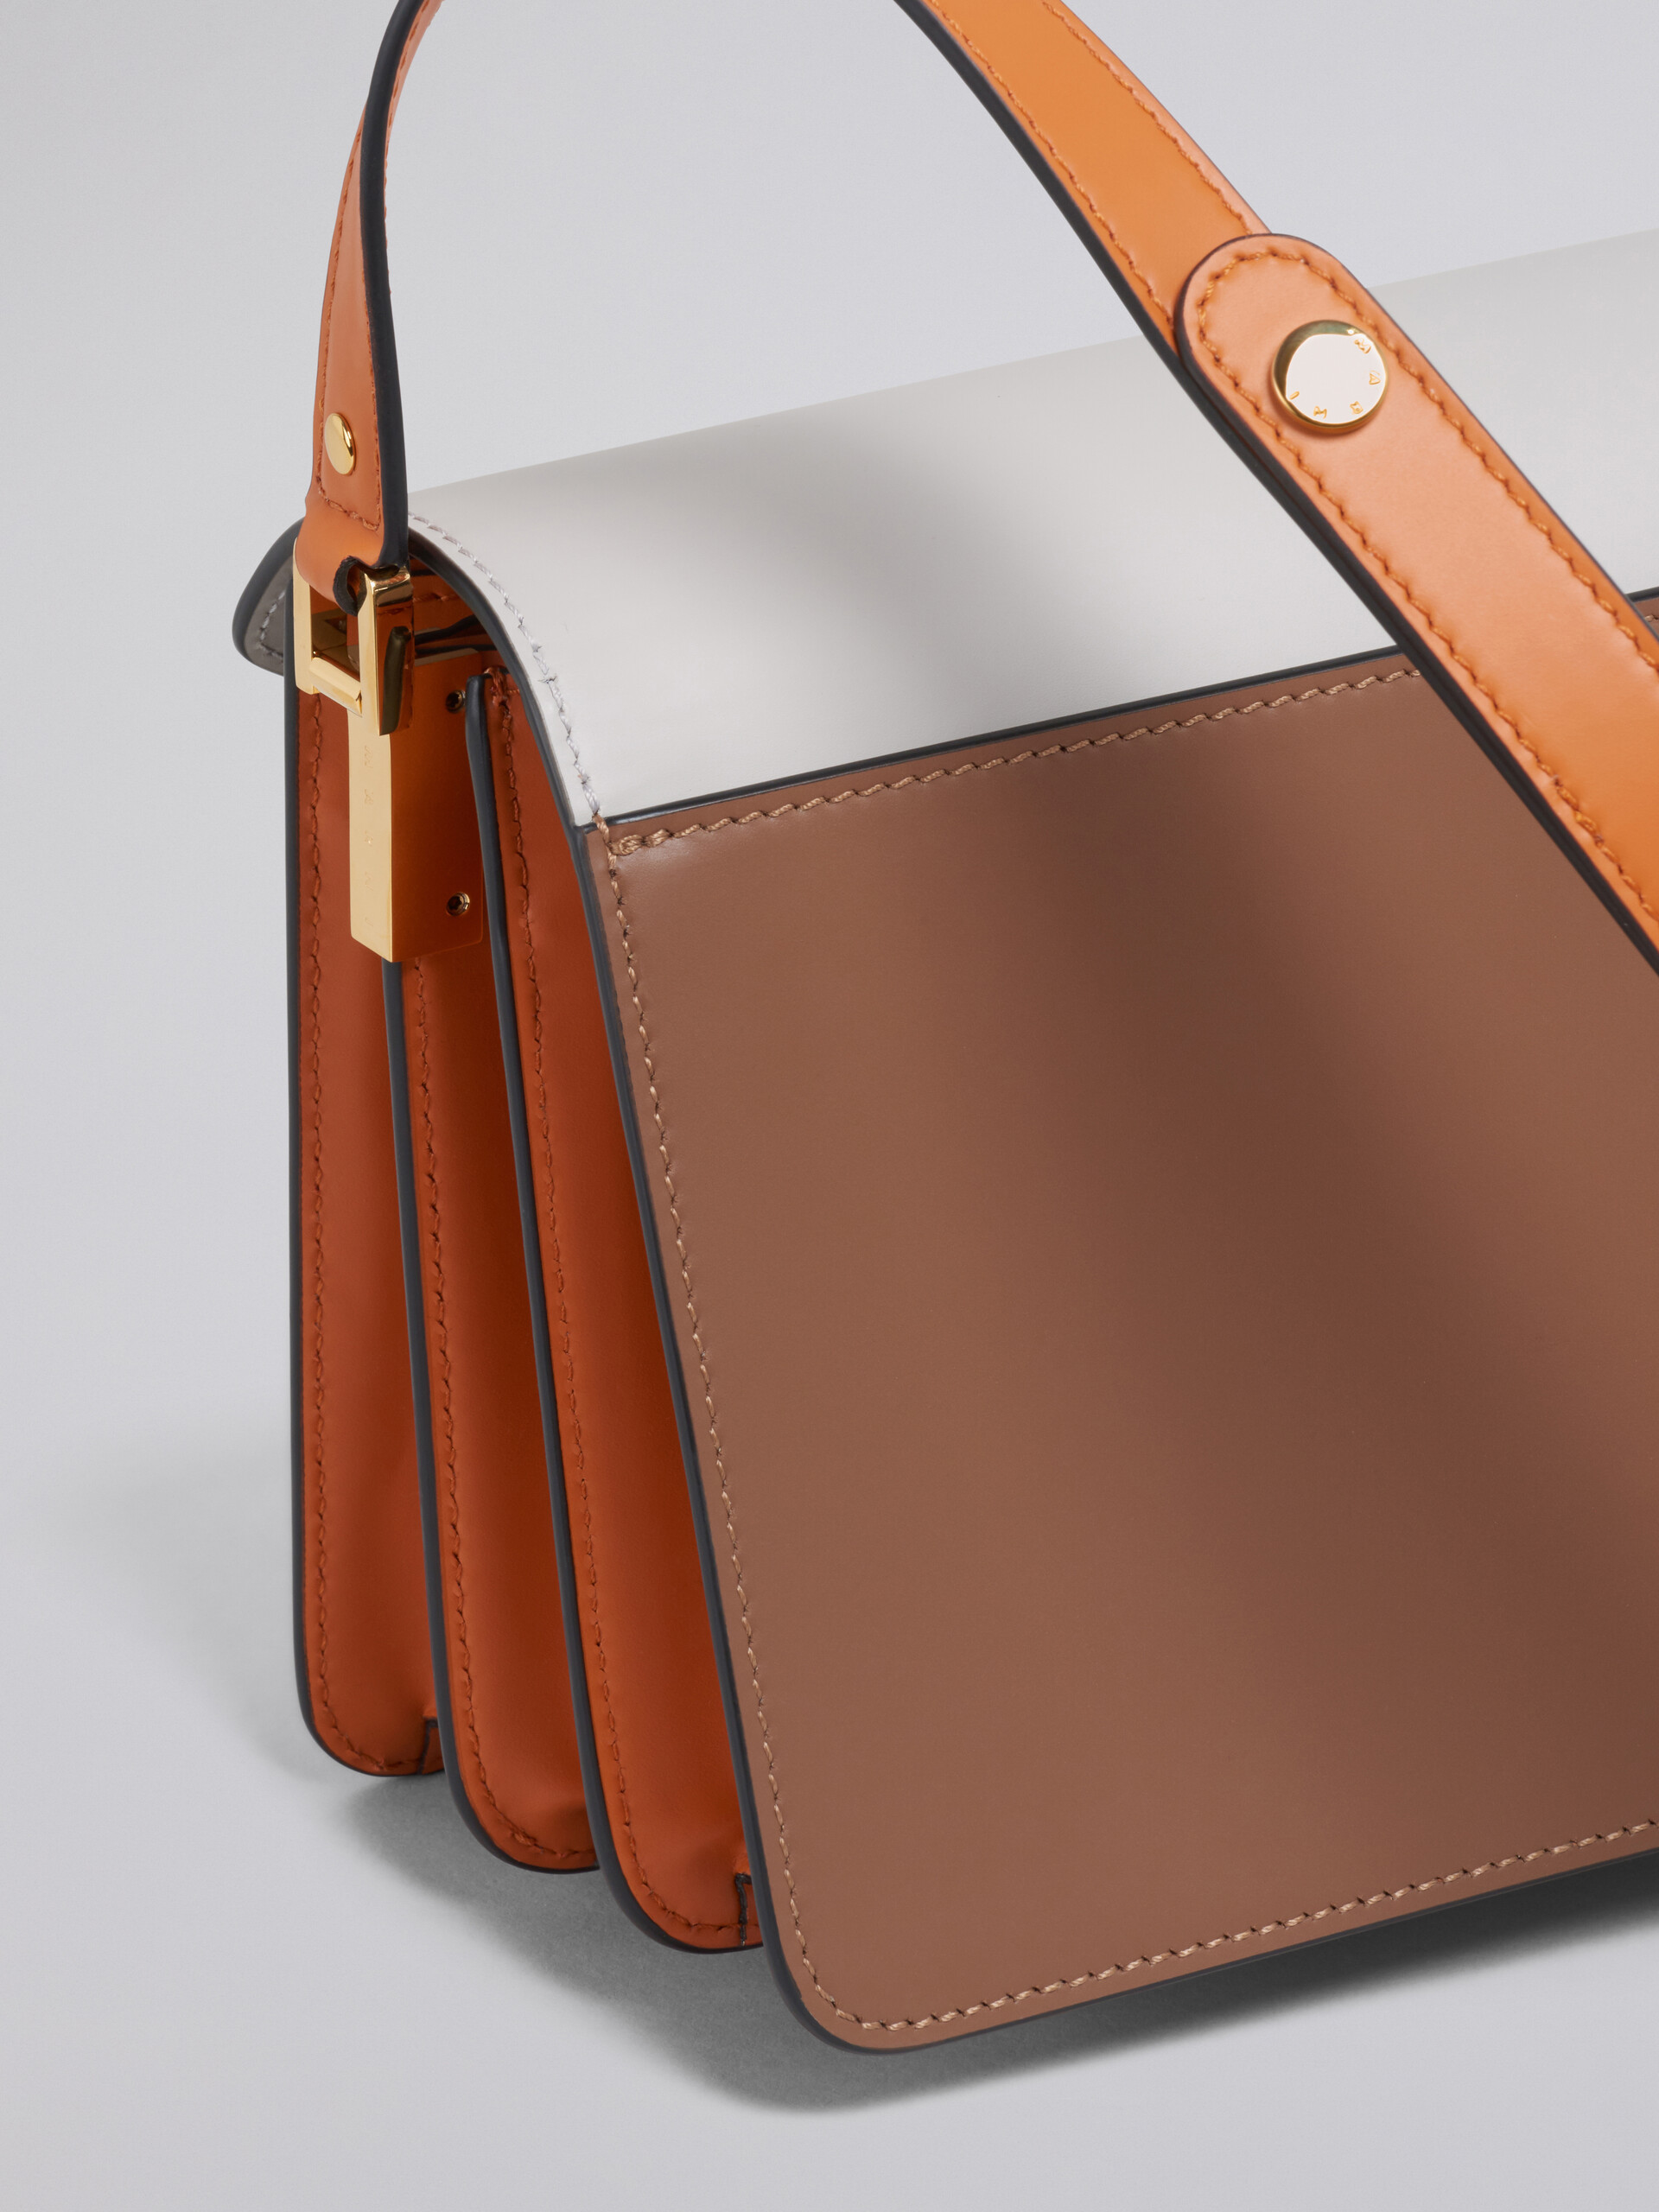 TRUNK medium bag in grey brown and orange leather - Shoulder Bag - Image 4